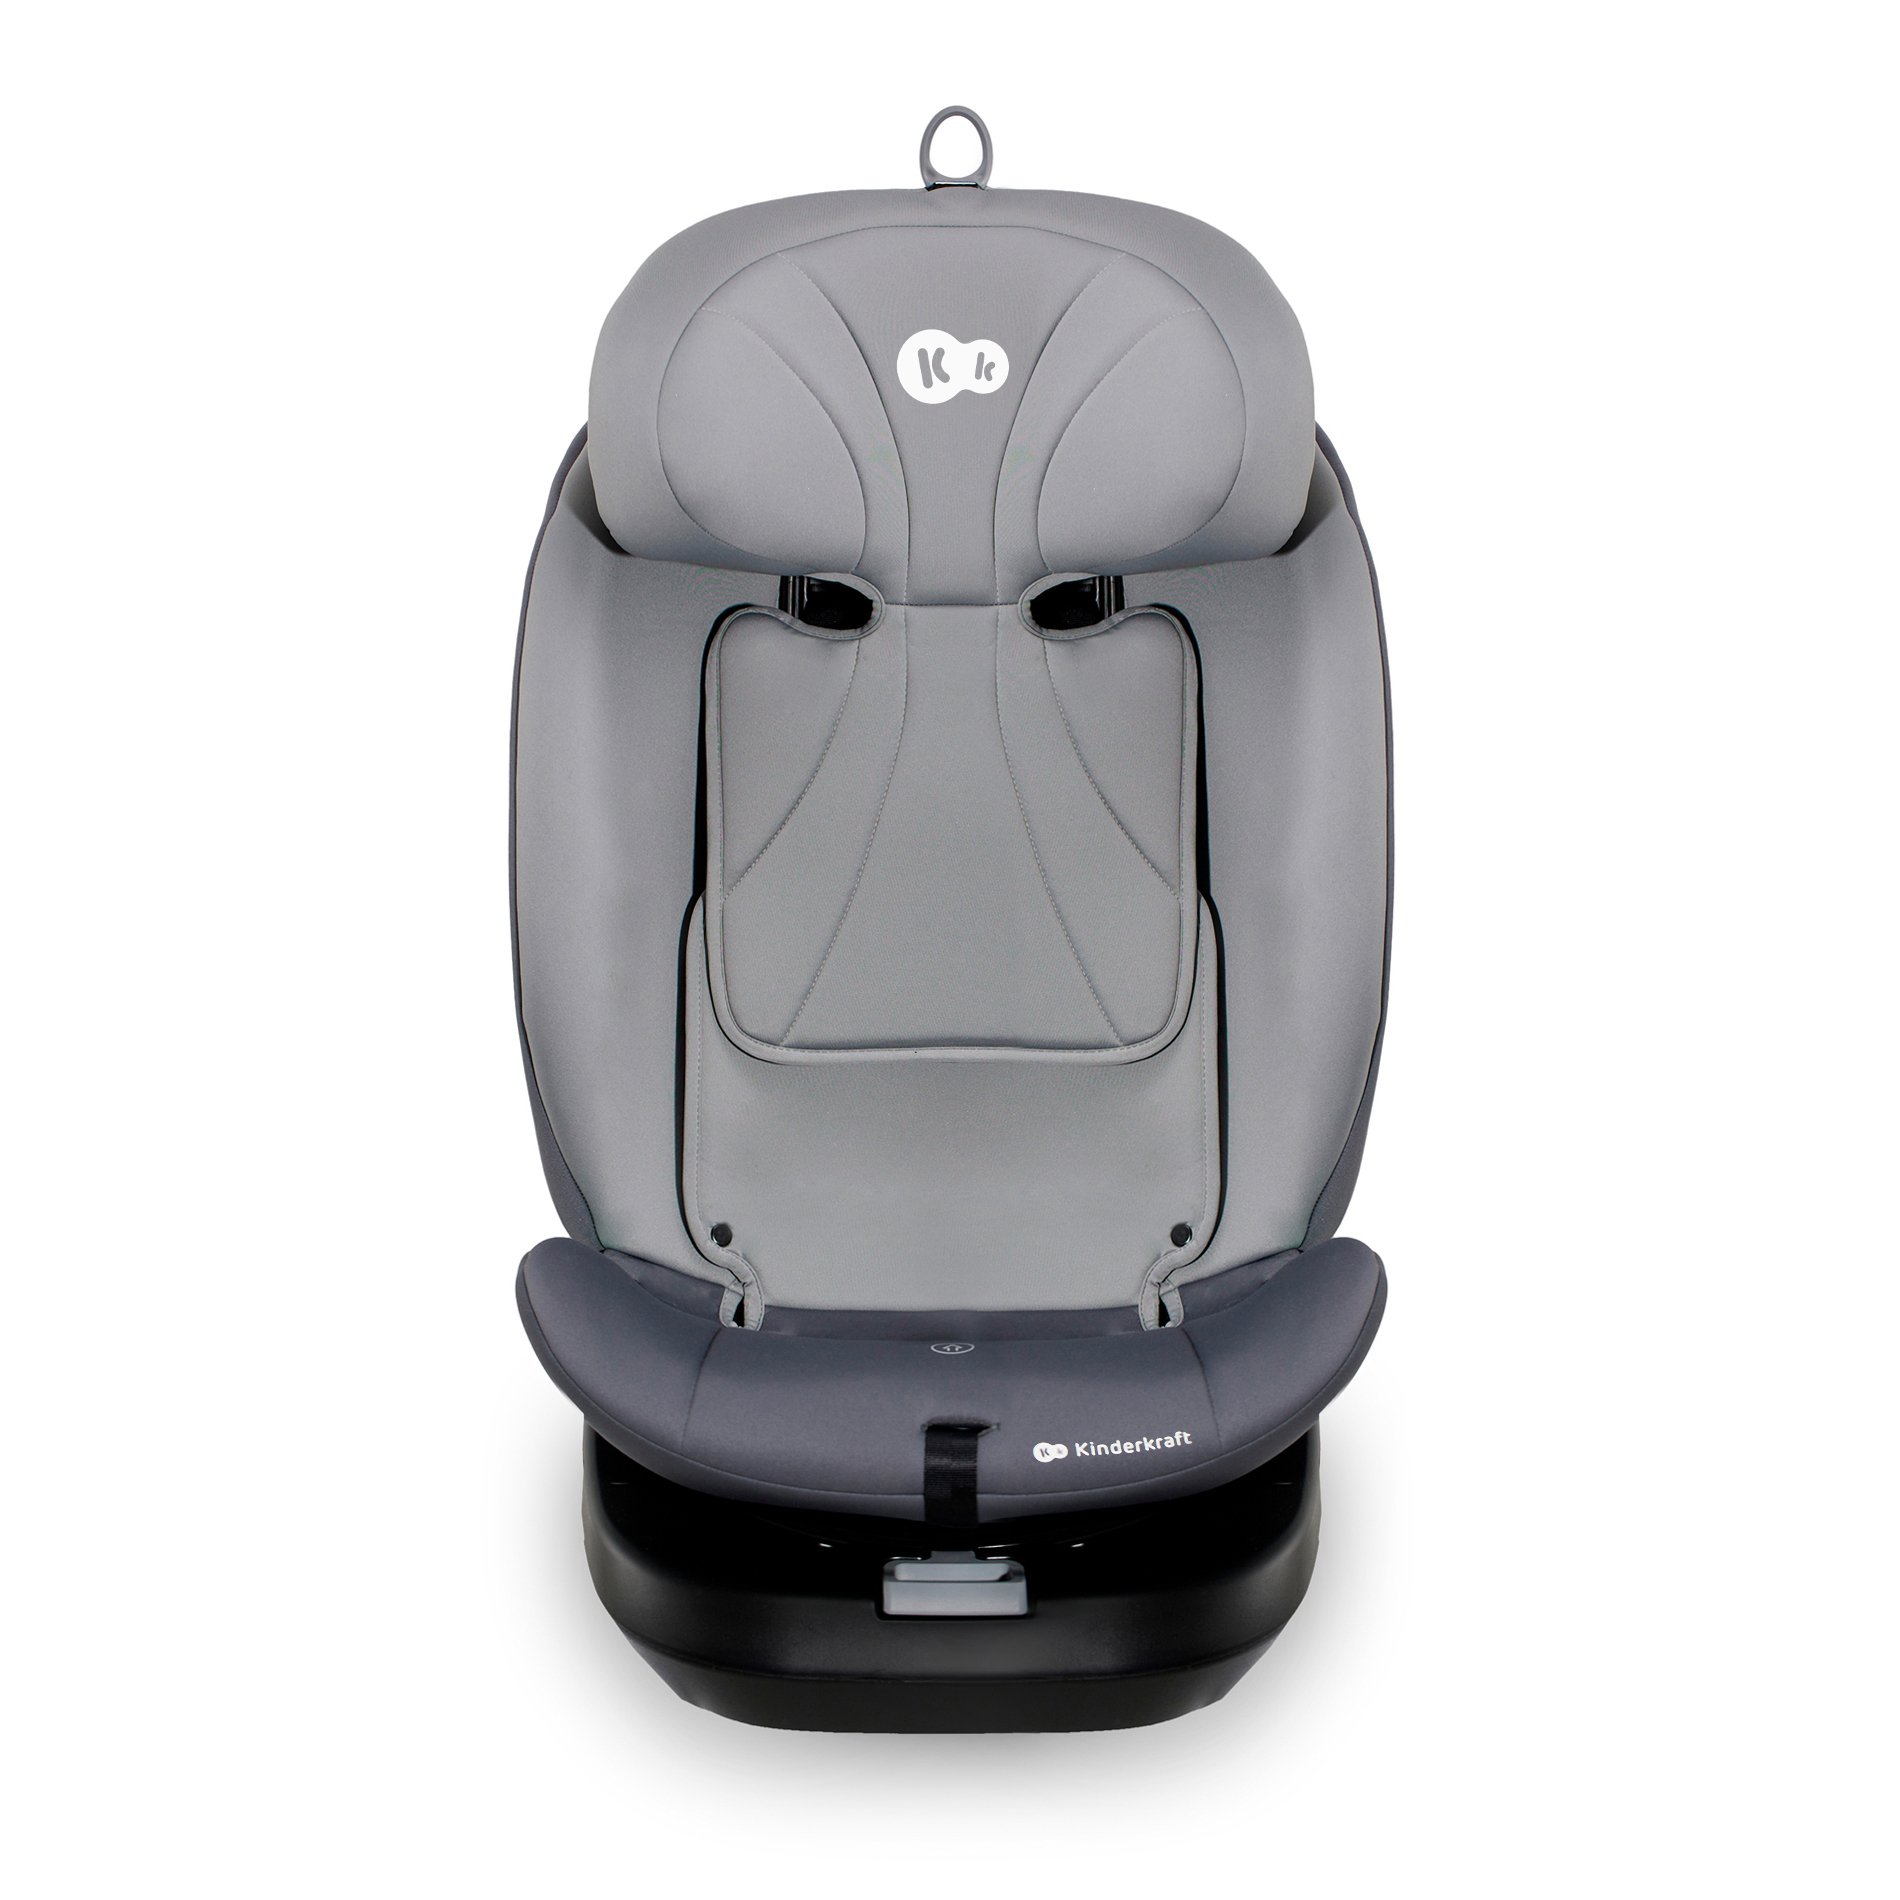 Βρεφικό-Παιδικό κάθισμα αυτοκινήτου i-Grow grey